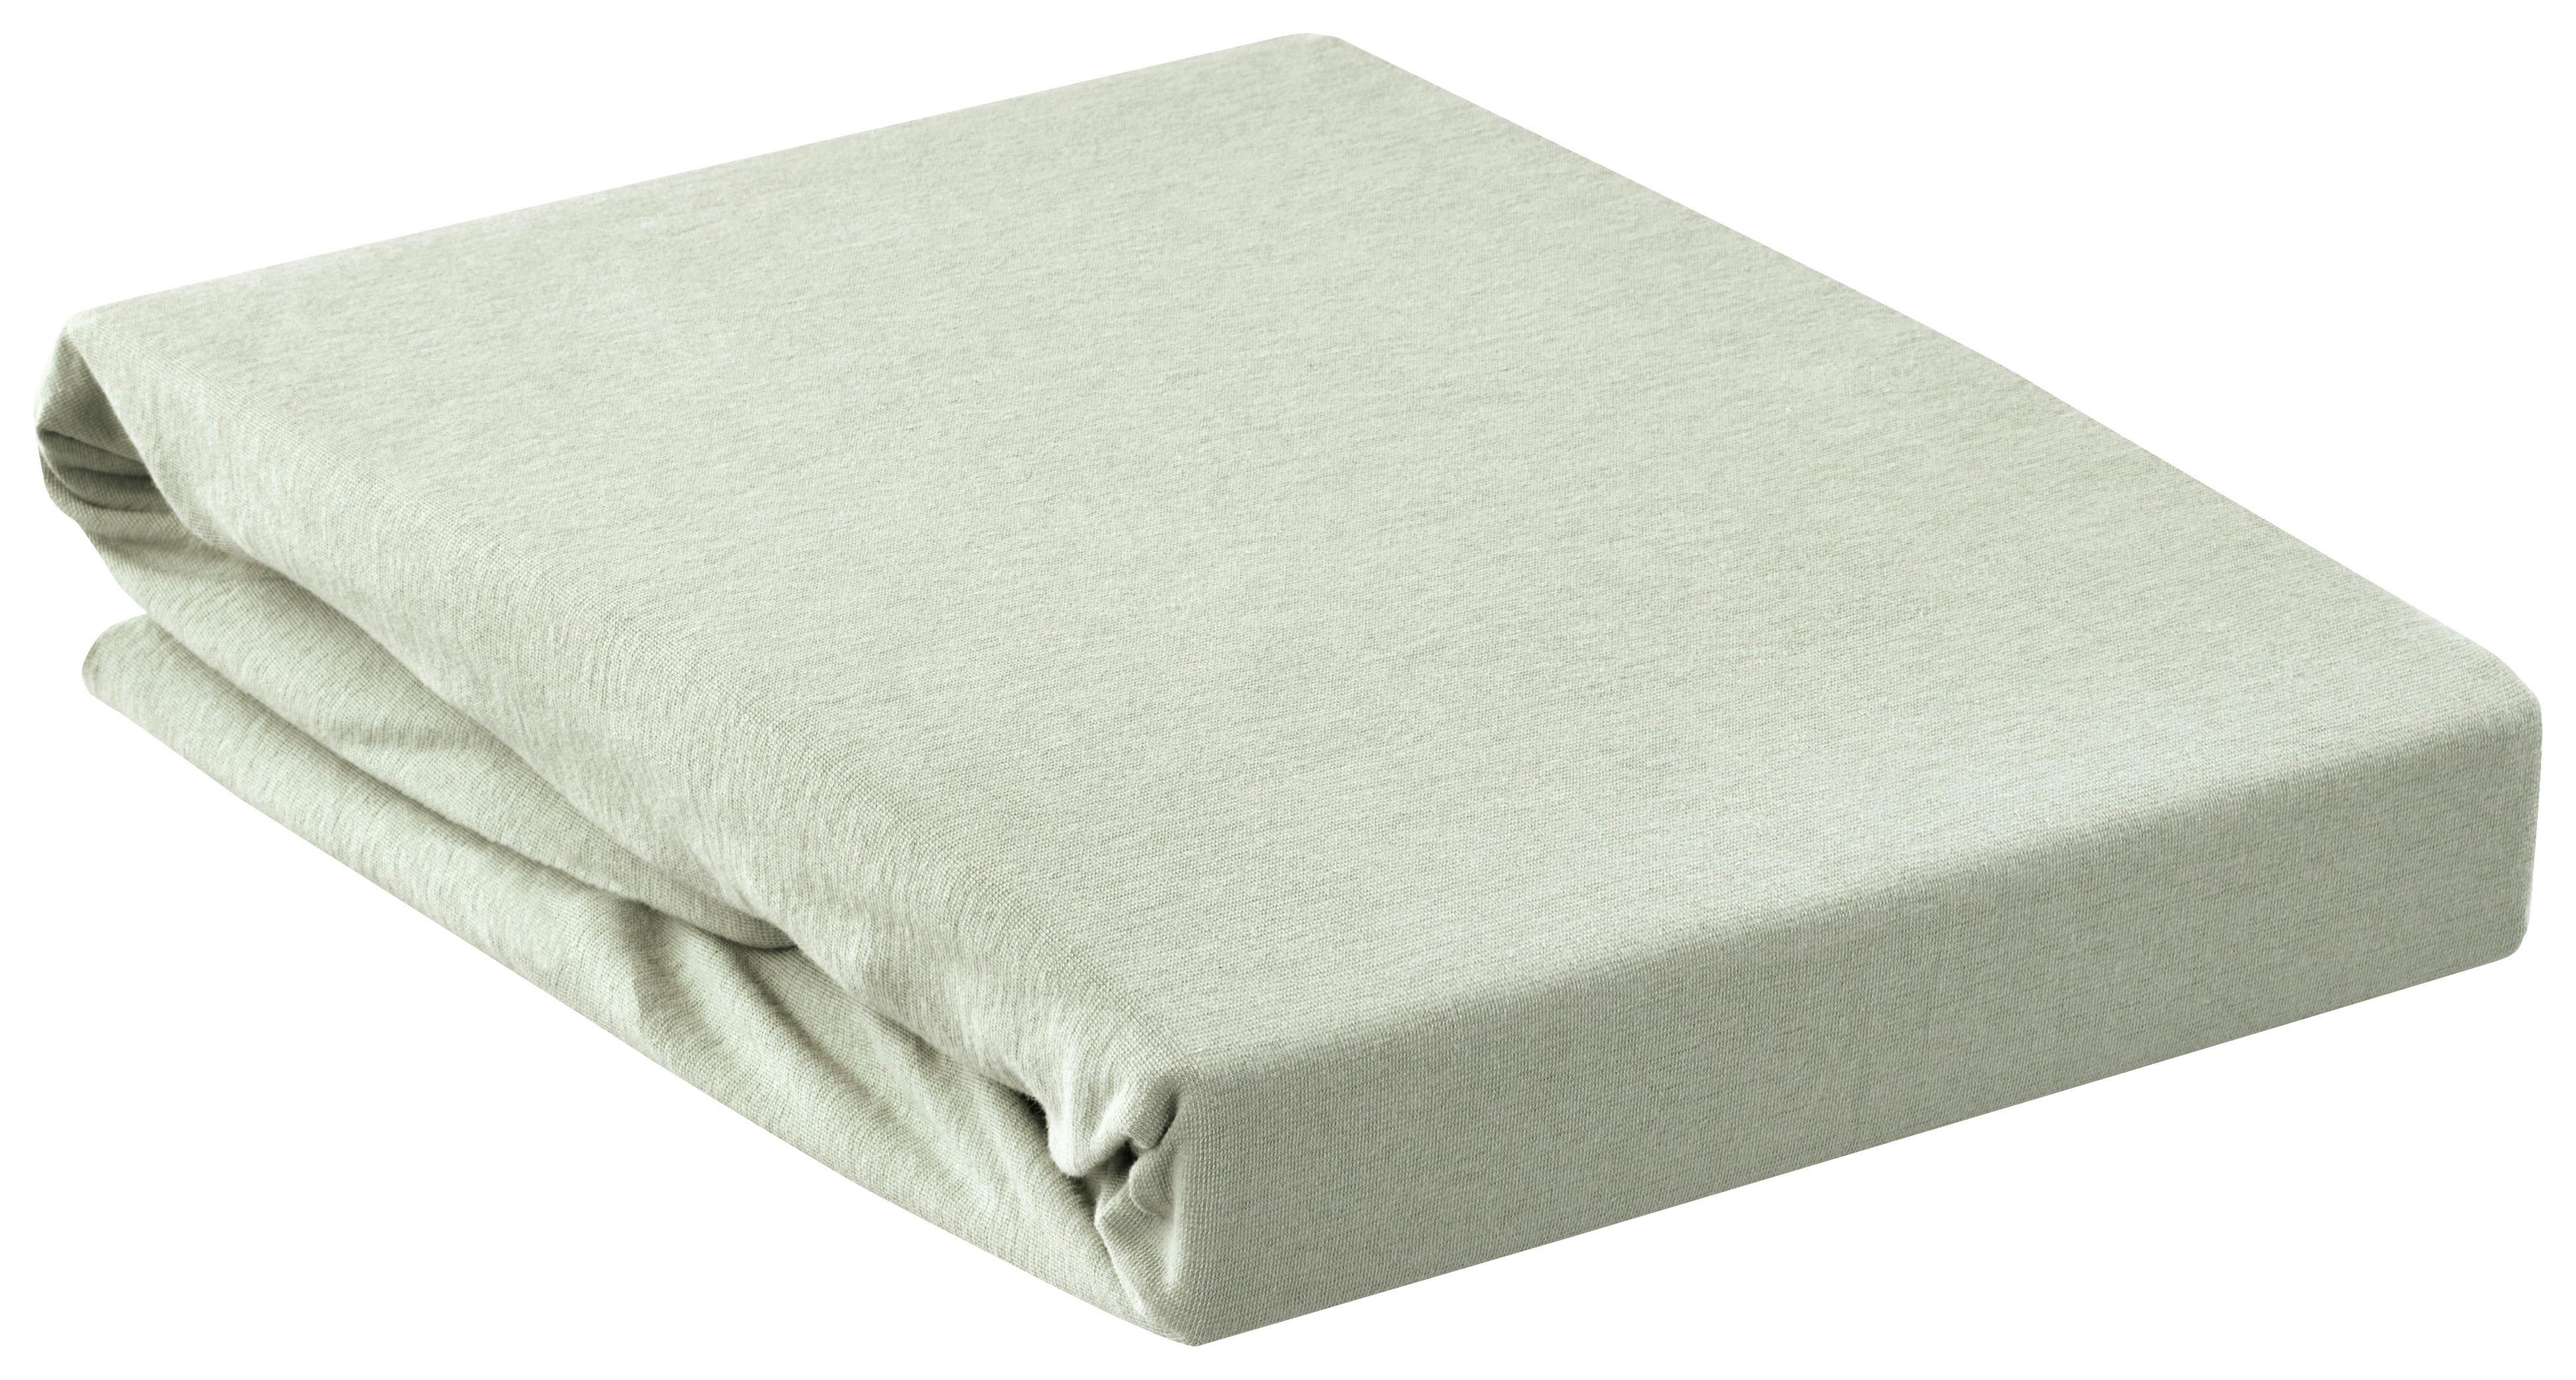 Napínacia Plachta Na Boxsprin Elasthan Hoch, 150/200cm - zelená, textil (150/200cm) - Premium Living